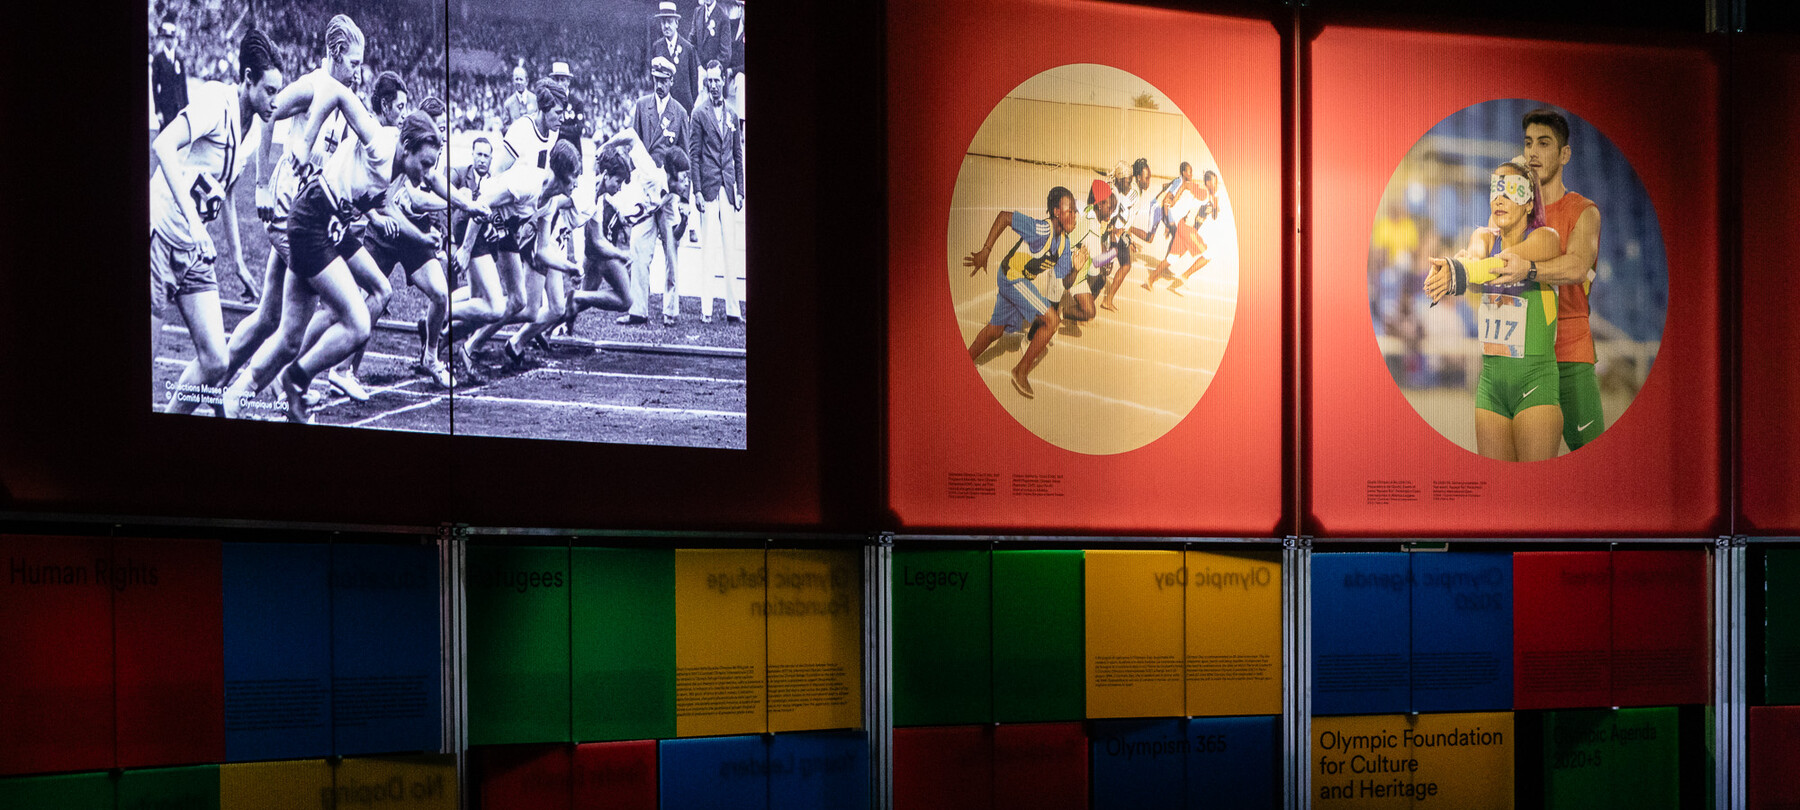 Records: the Olympics exhibit in Trento